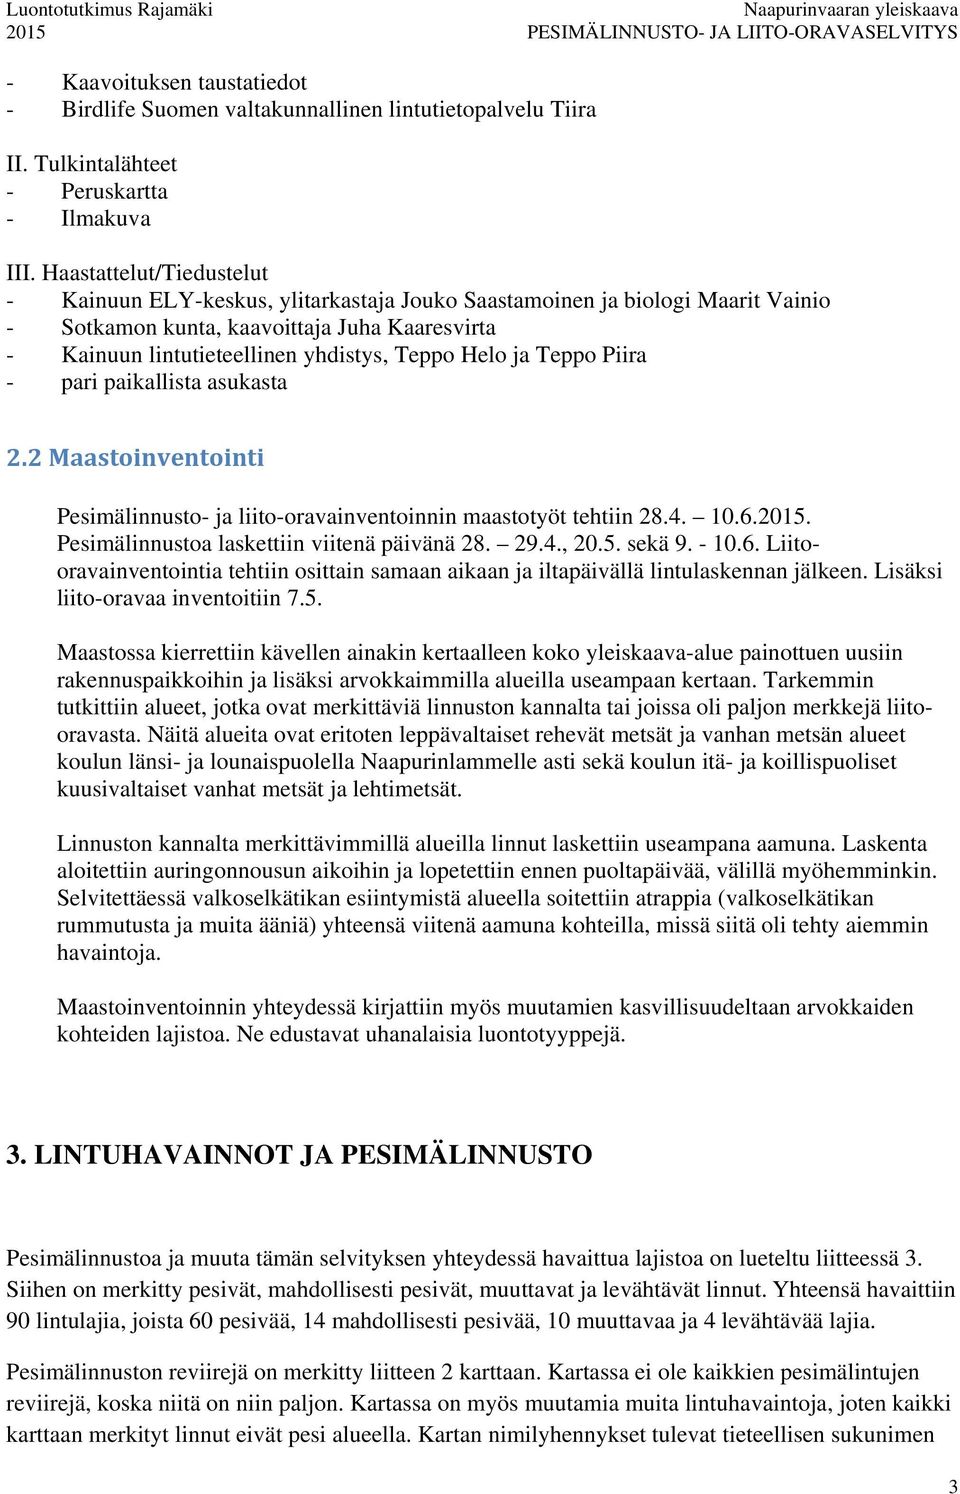 Helo ja Teppo Piira - pari paikallista asukasta 2.2 Maastoinventointi Pesimälinnusto- ja liito-oravainventoinnin maastotyöt tehtiin 28.4. 10.6.2015. Pesimälinnustoa laskettiin viitenä päivänä 28. 29.